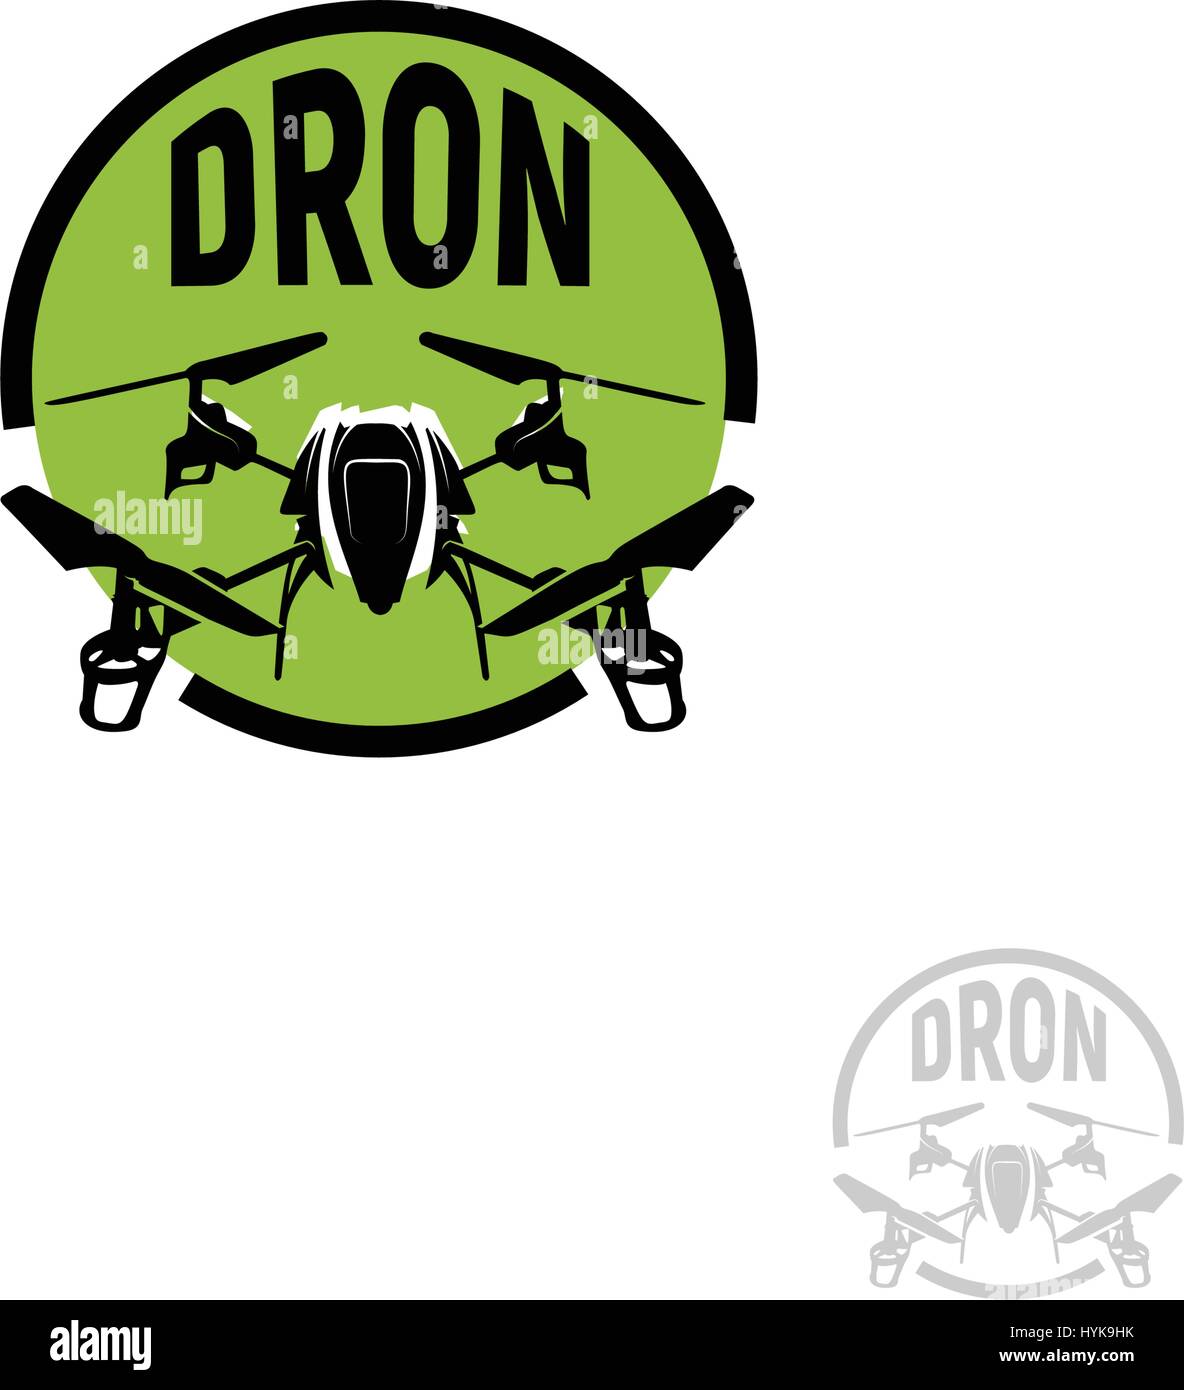 Forme ronde couleur noir isolé quadrocopter en cercle vert logo sur fond blanc, logo de véhicule aérien sans pilote drone rc, vector illustration Illustration de Vecteur